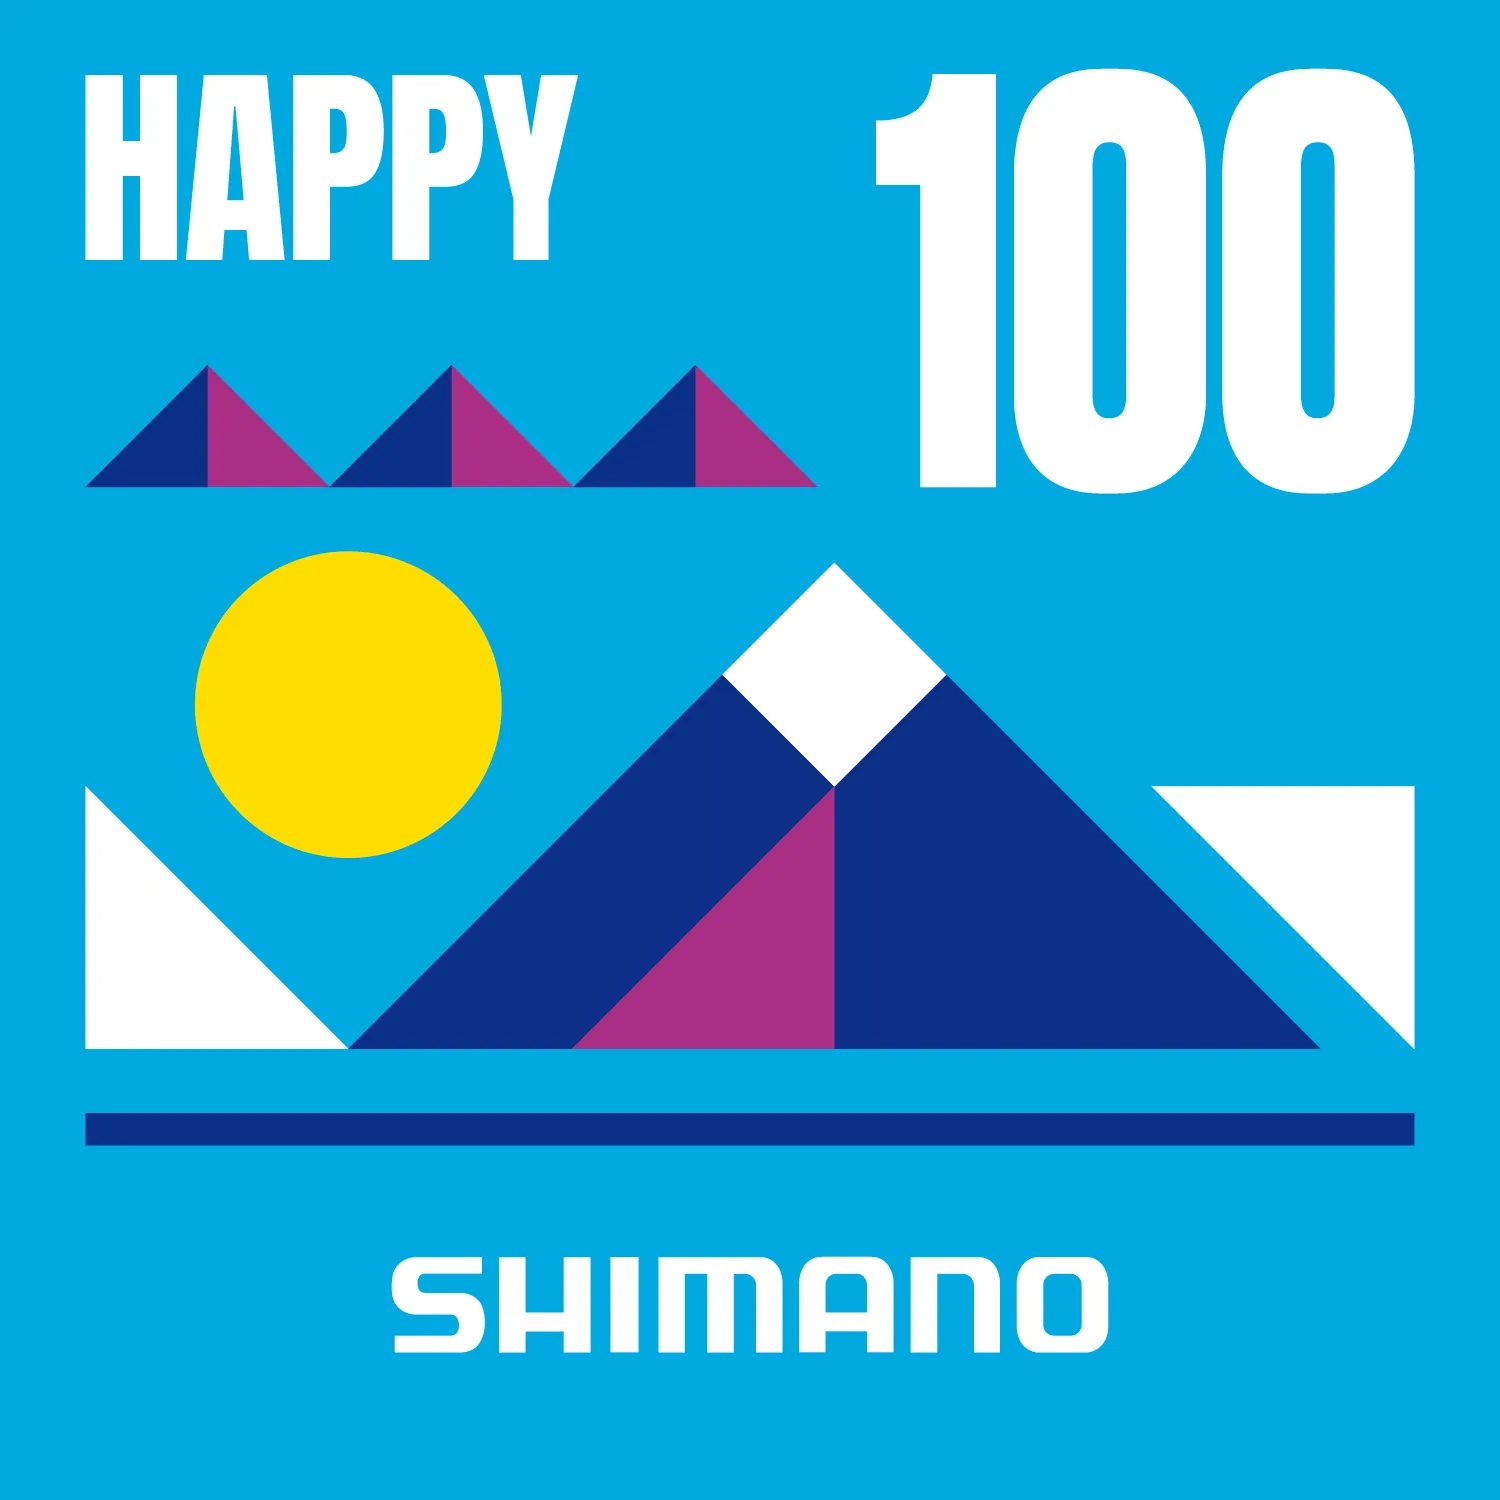 限量2000份 Shimano推百年纪念画册